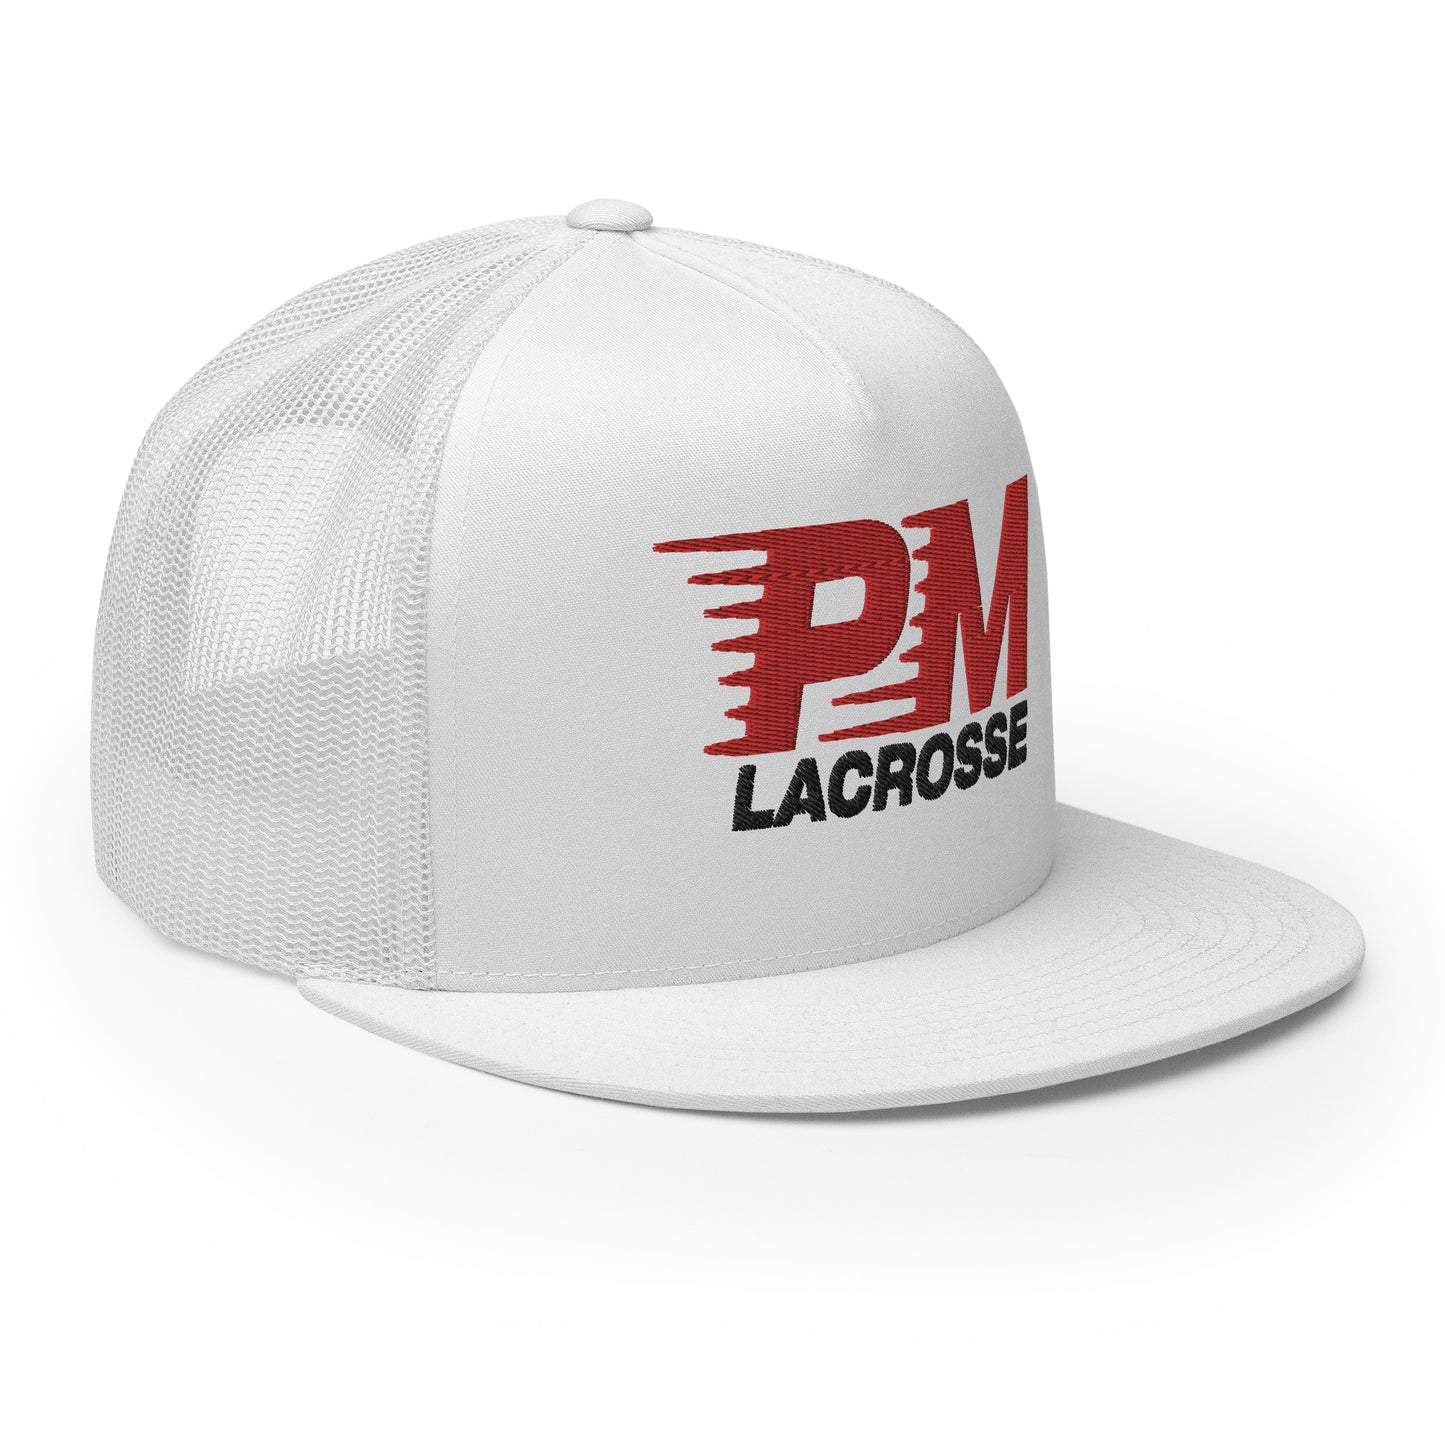 PM Lacrosse - Trucker Cap